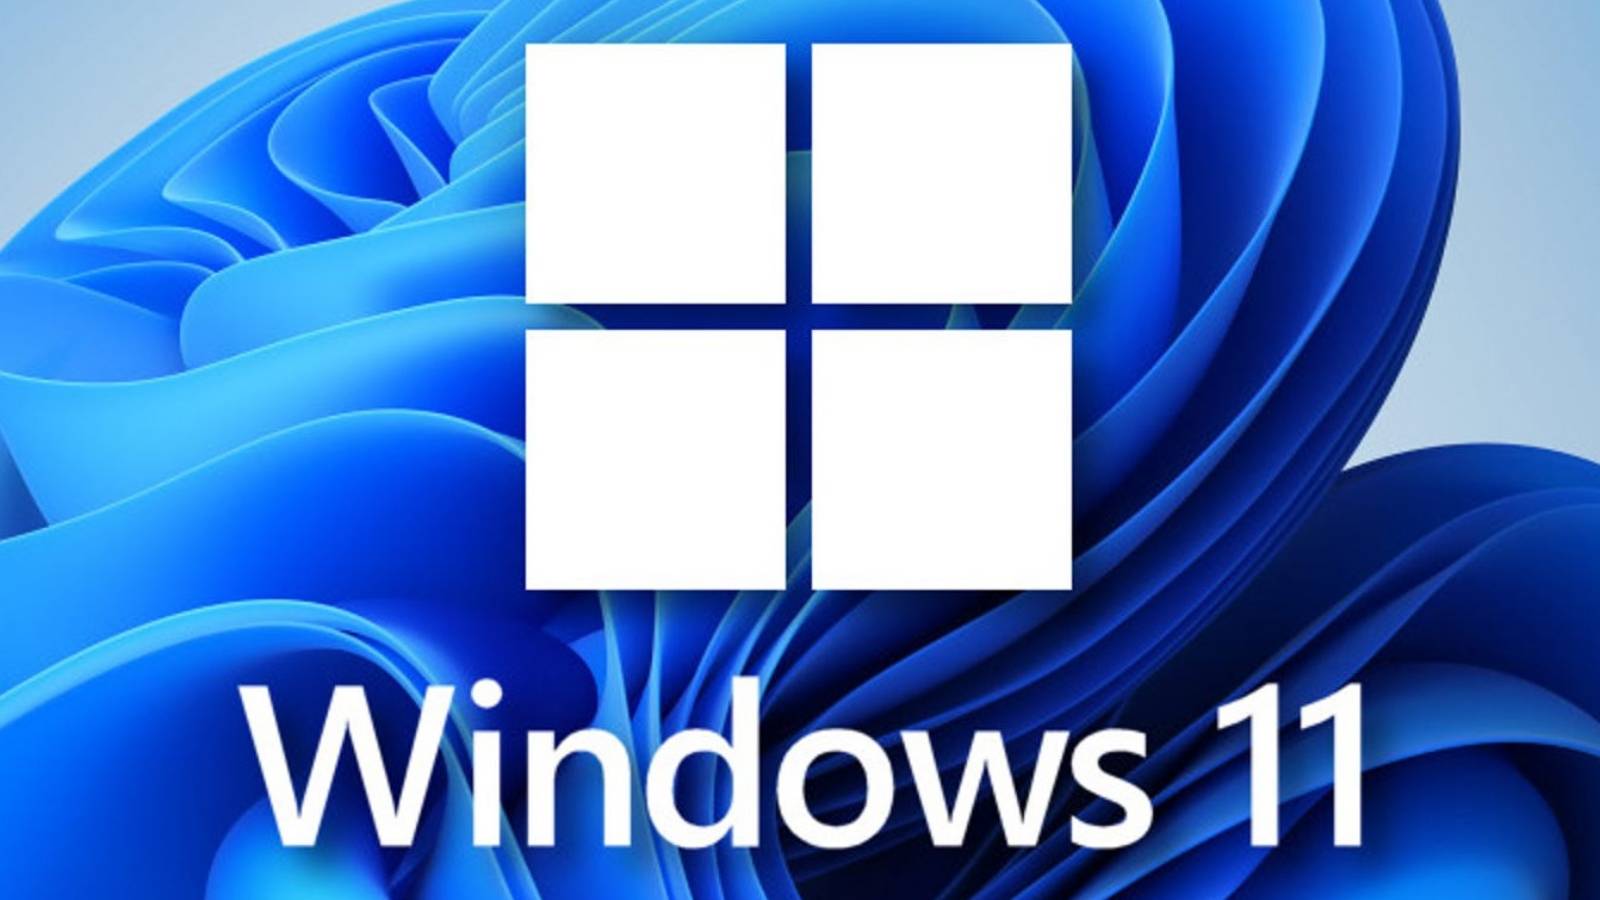 Microsoft FURA NVIDIA AMD Windows 11 större förändring